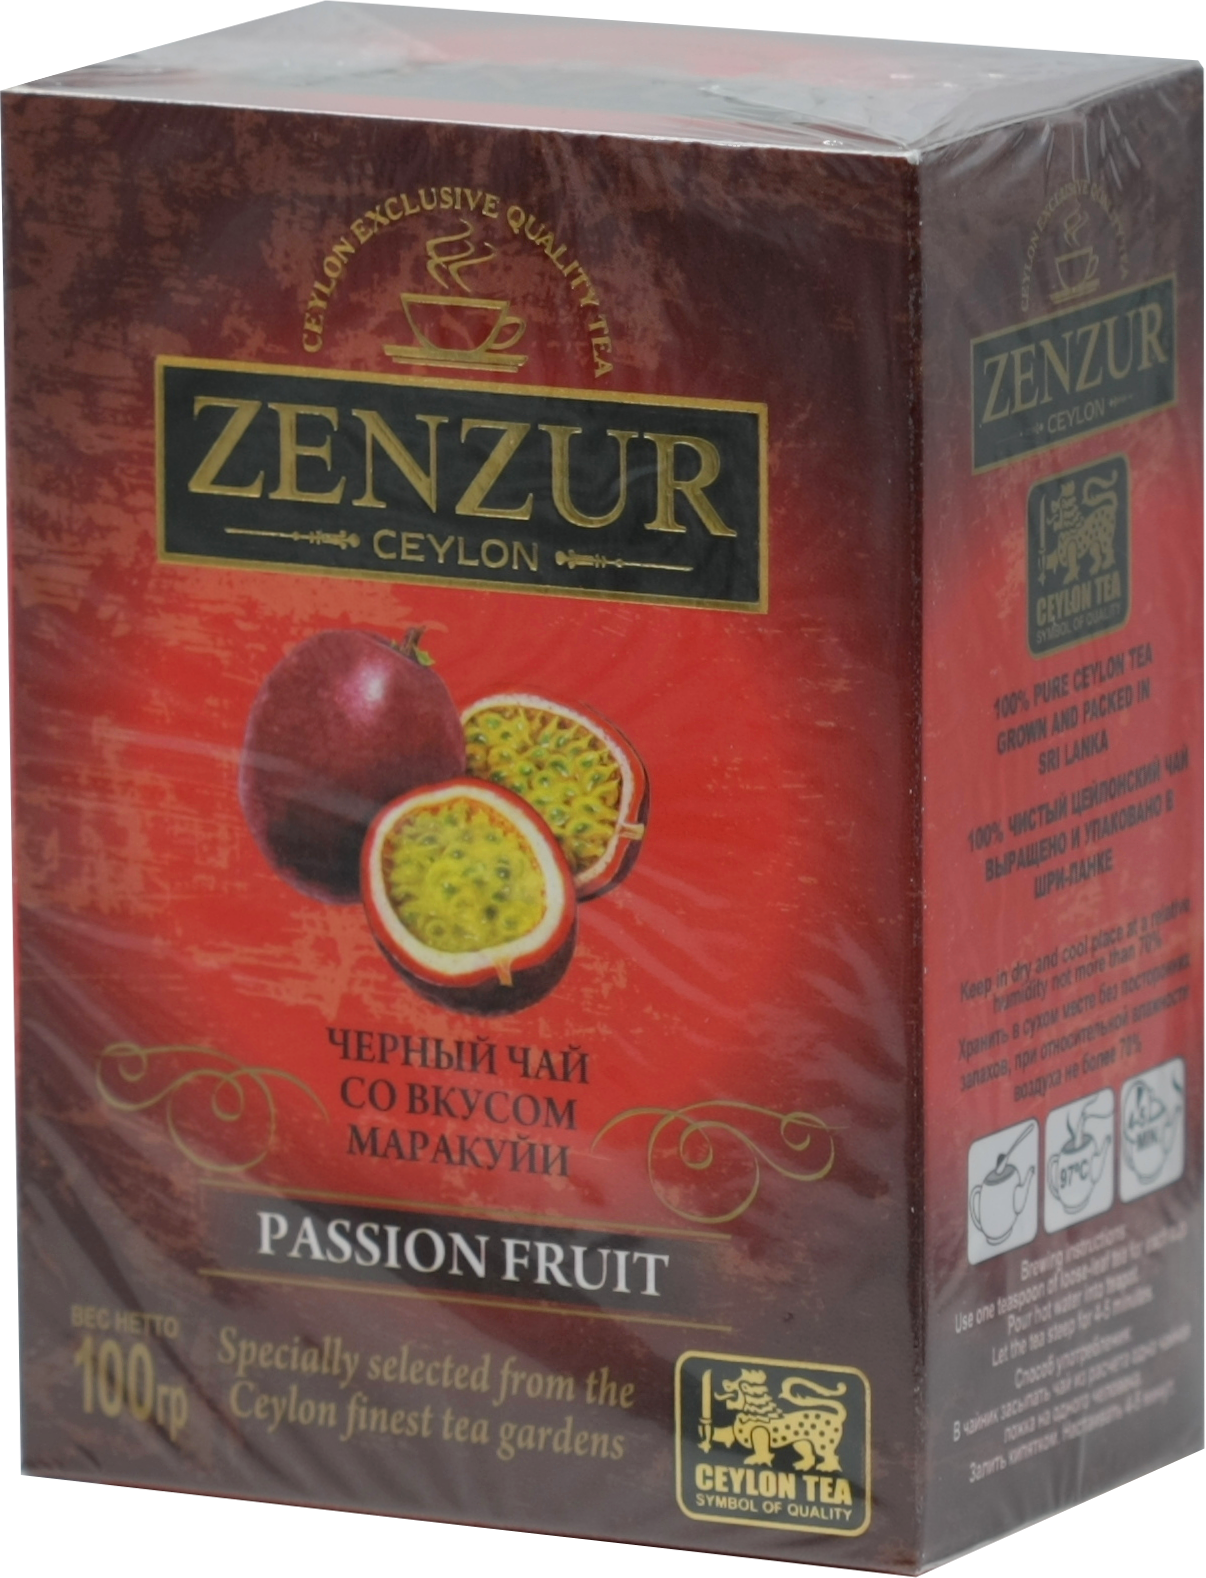 Zenzur. Passion fruit 100 гр. карт.пачка